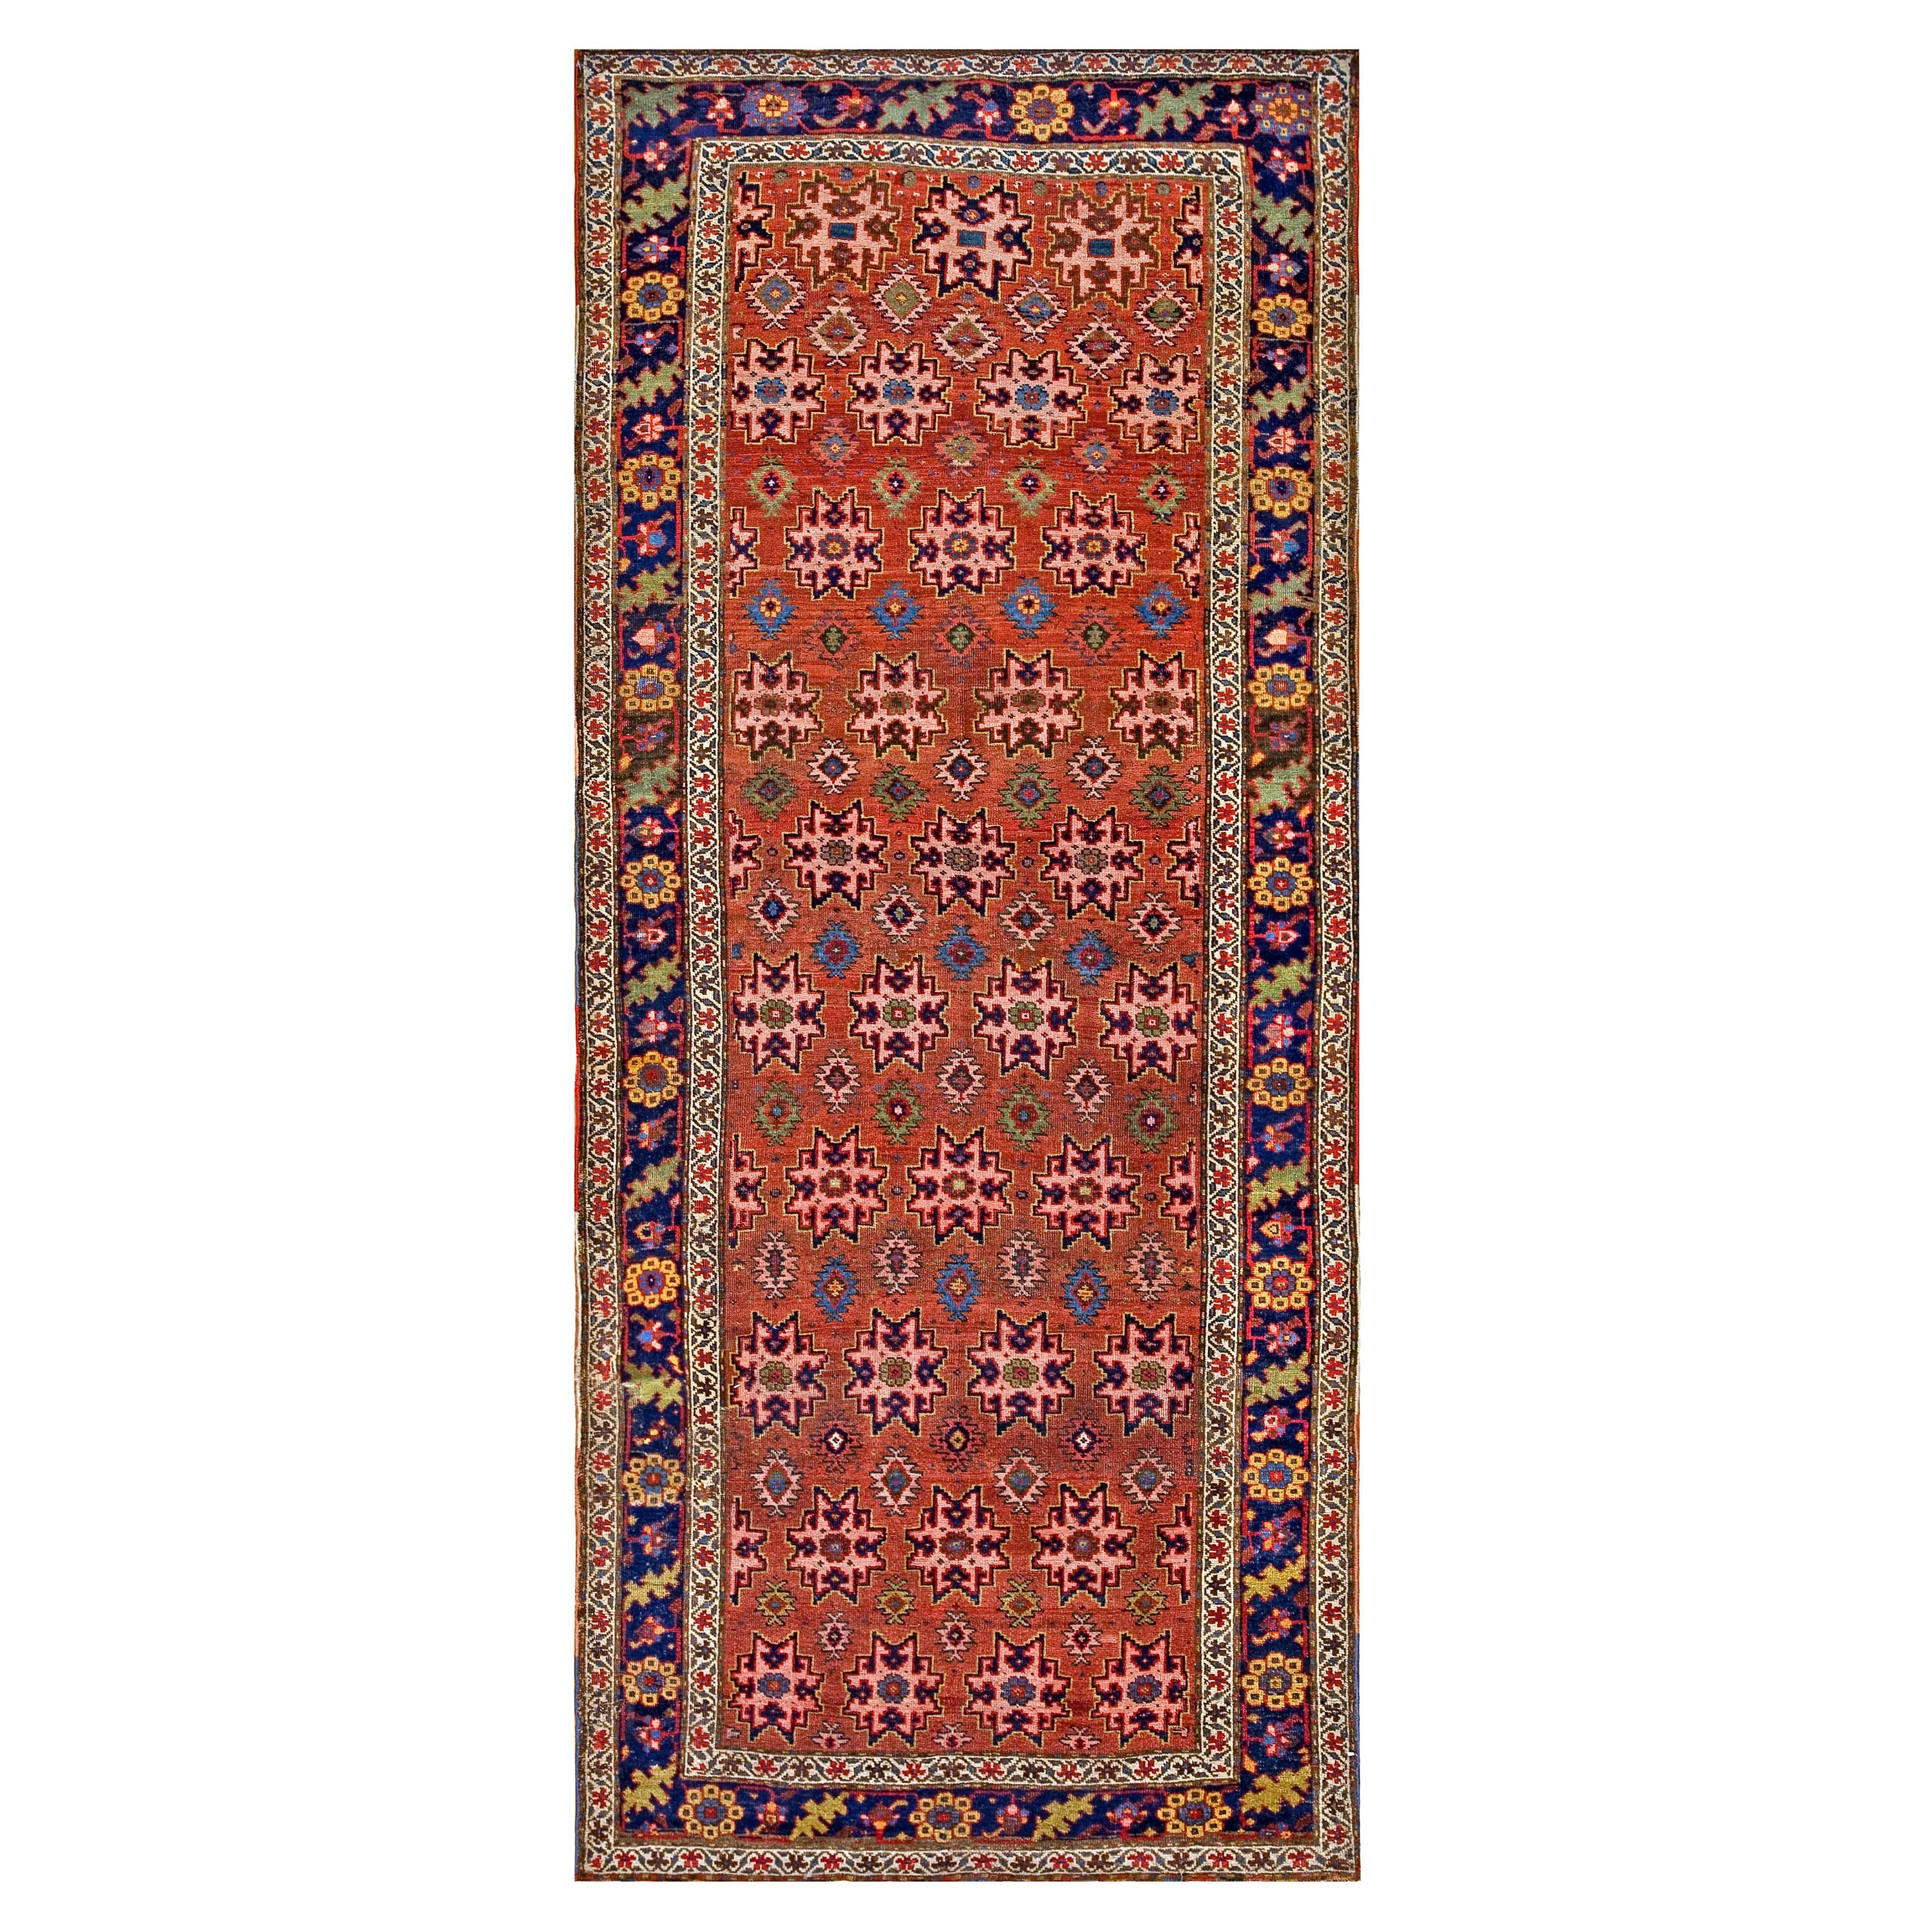 19. Jahrhundert W. Persischer Bijar-Teppich ( 4'6" x 10'6" - 137 x 320)